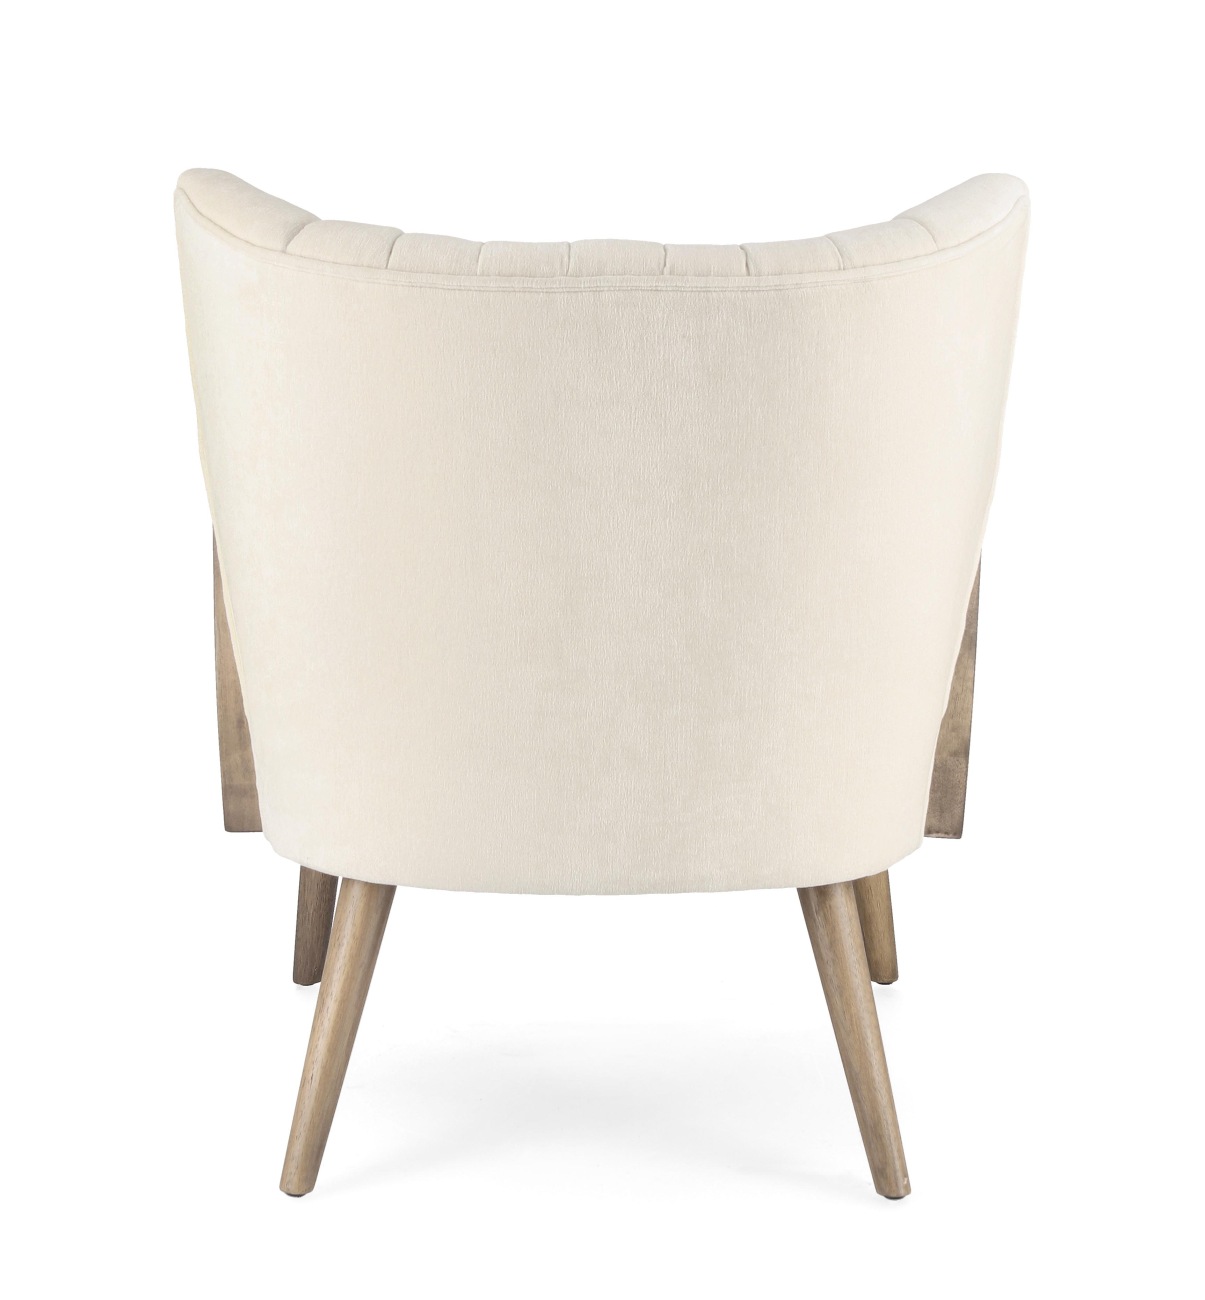 Der Sessel Virna überzeugt mit seinem modernen Stil. Gefertigt wurde er aus einem Stoff-Bezug, welcher einen Creme Farbton besitzt. Das Gestell ist aus Kautschukholz und hat eine braune Farbe. Der Sessel verfügt über eine Armlehne.